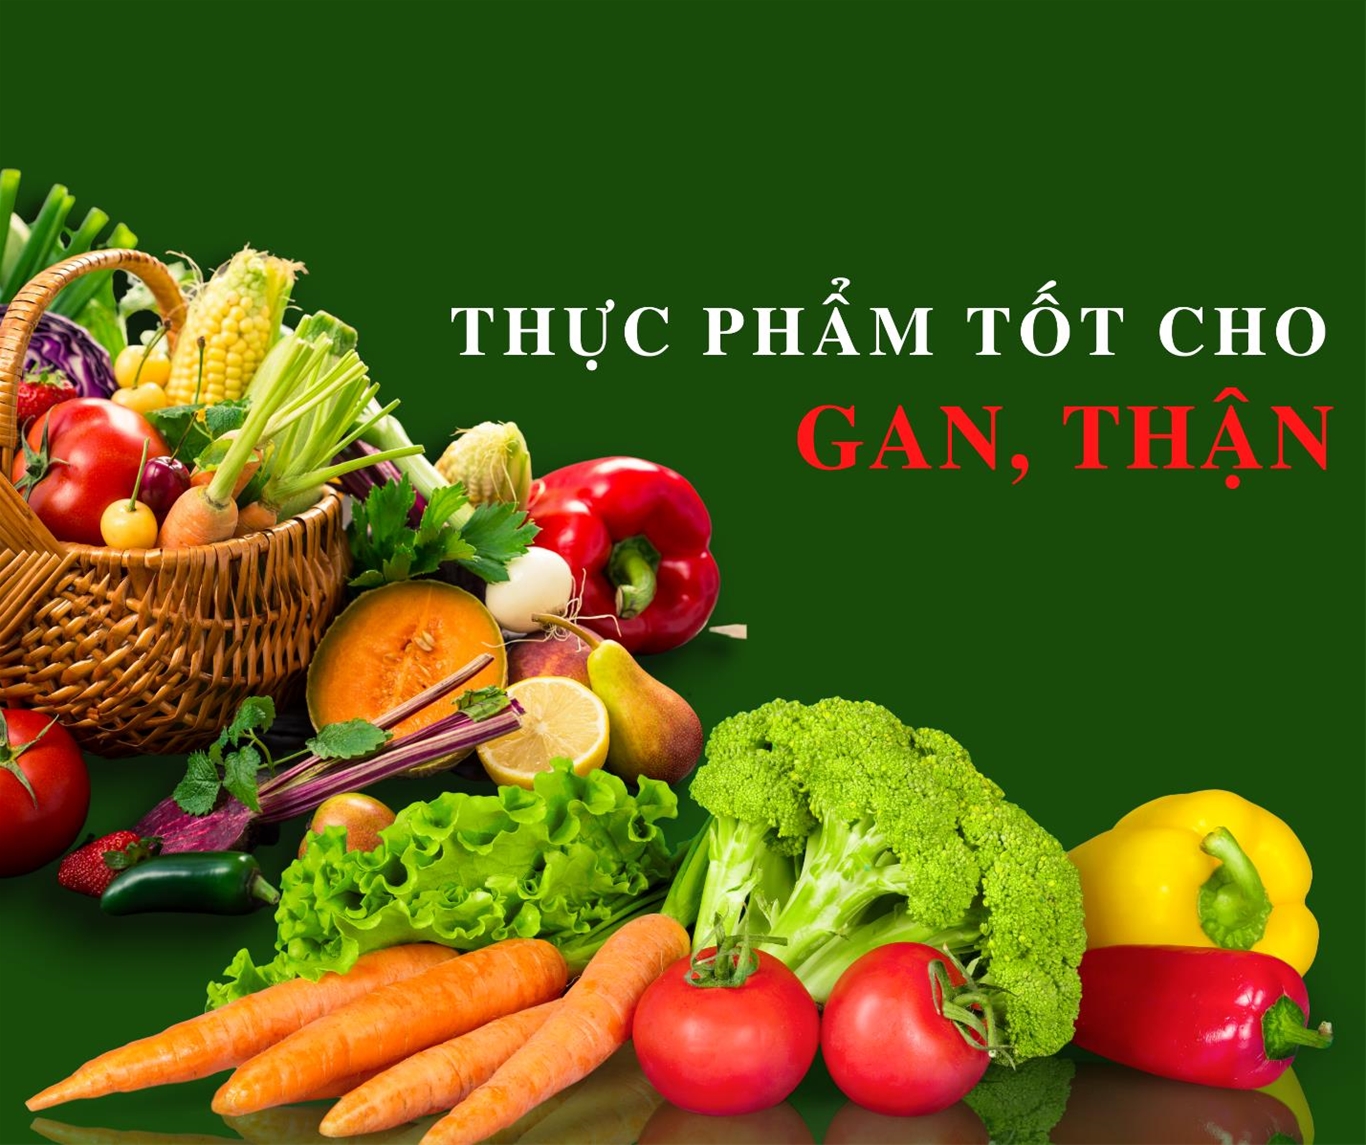 Để tốt cho gan, nên ăn nhiều rau củ quả tươi